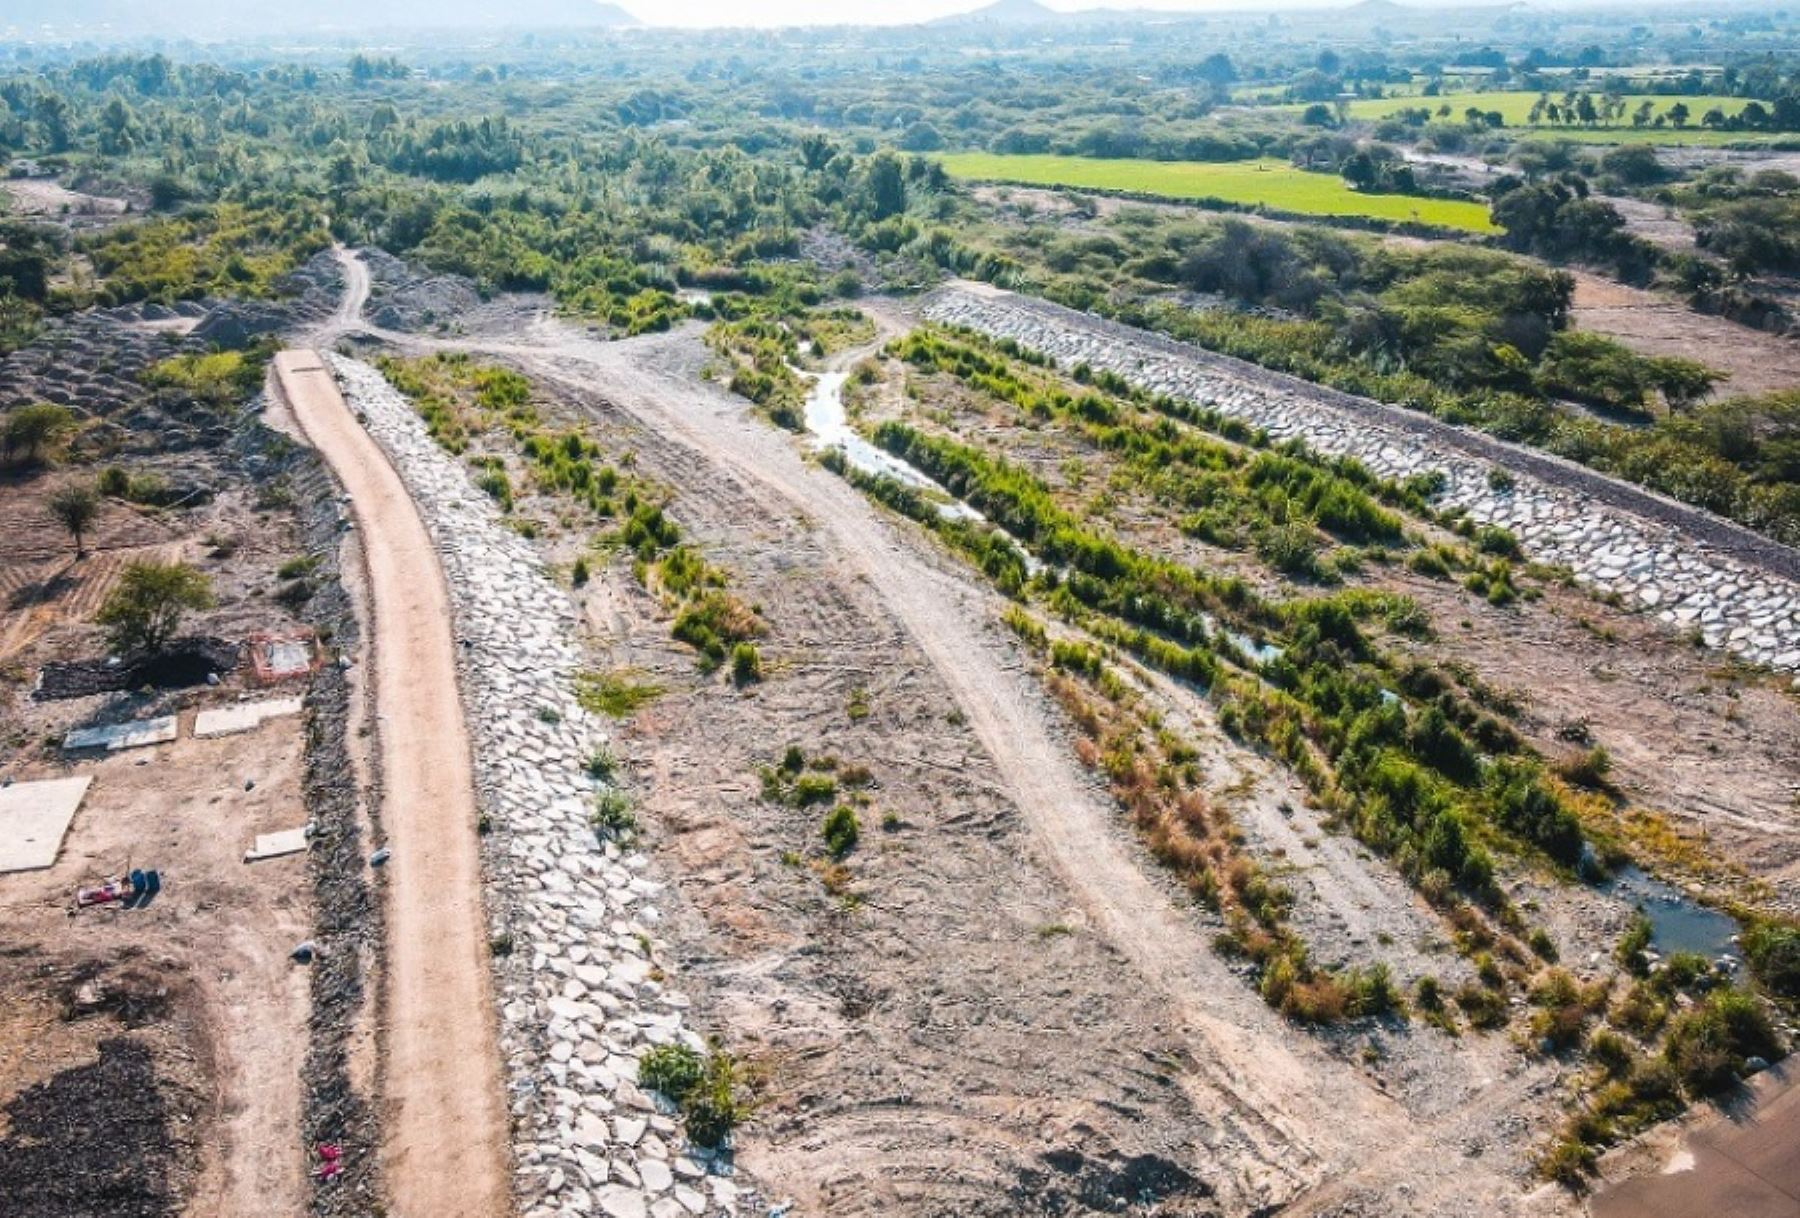 La Autoridad para la Reconstrucción con Cambios (ARCC) presentó el proyecto de soluciones integrales de los ríos Olmos y Zaña, que se desarrolla en el marco del Acuerdo de Gobierno a Gobierno con el Reino Unido.